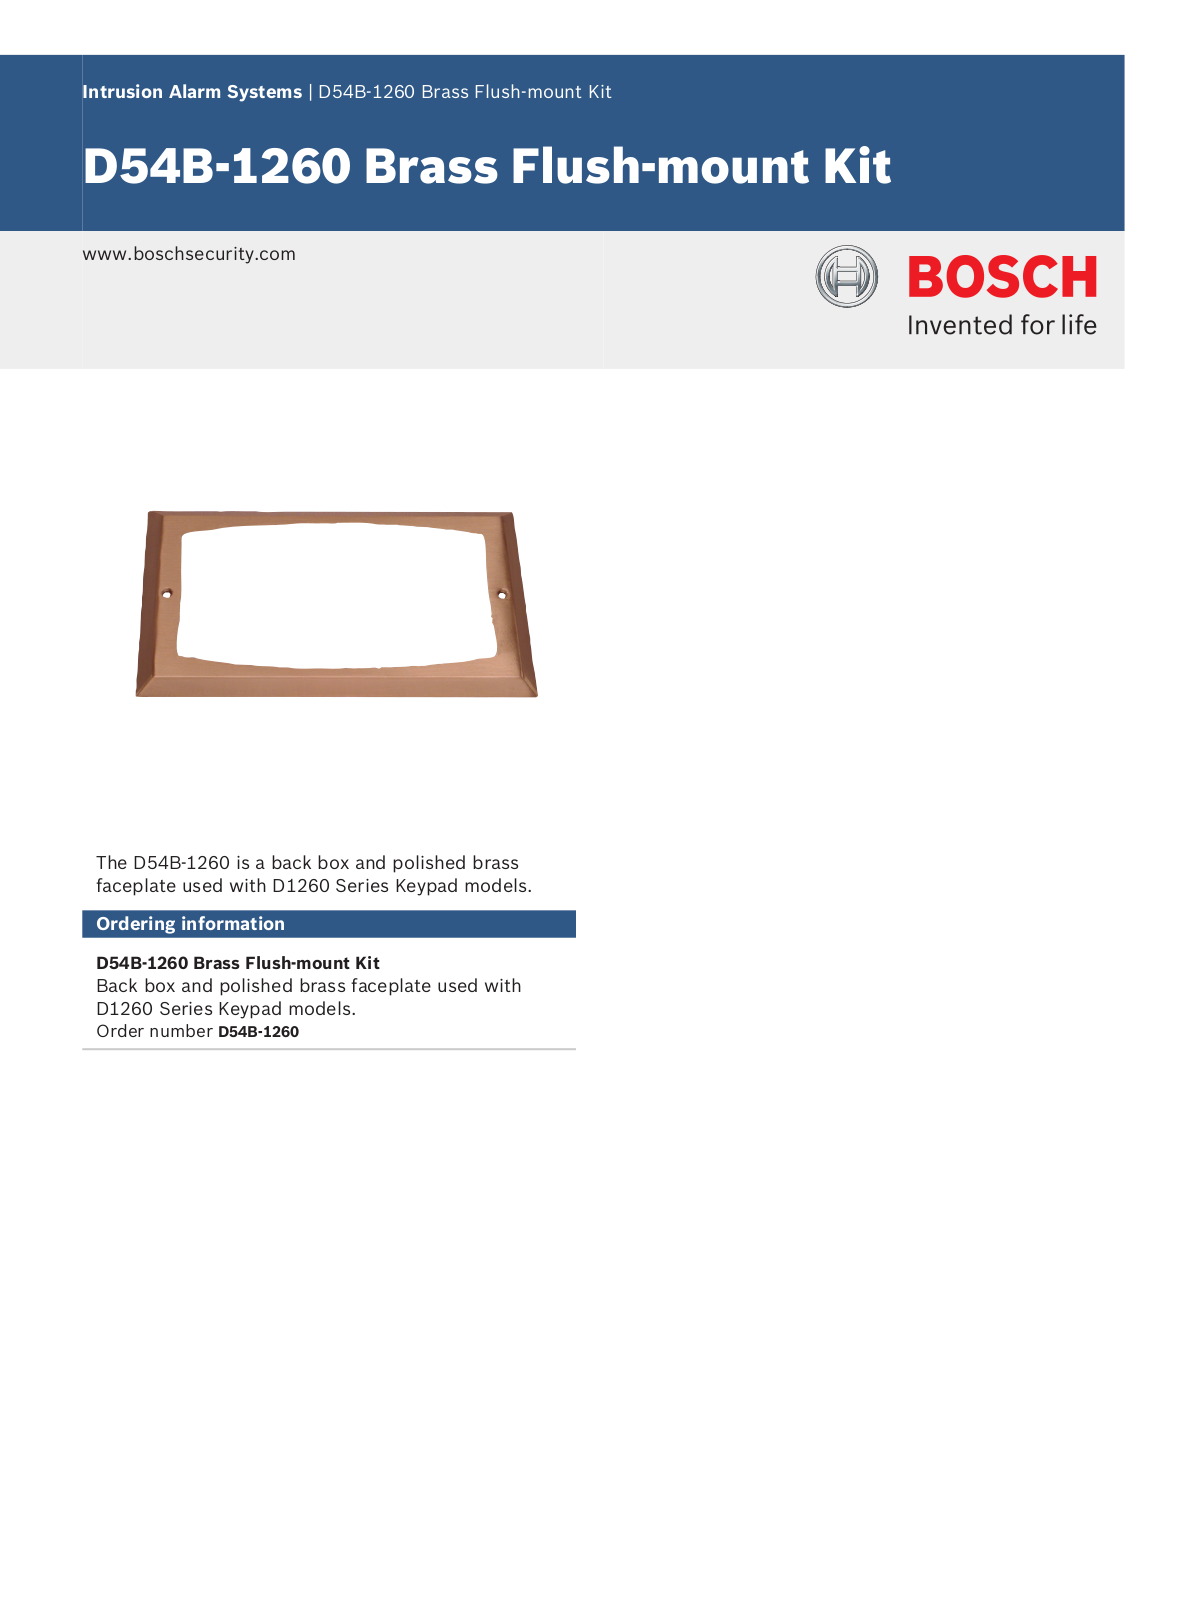 Bosch D54B-1260 Specsheet